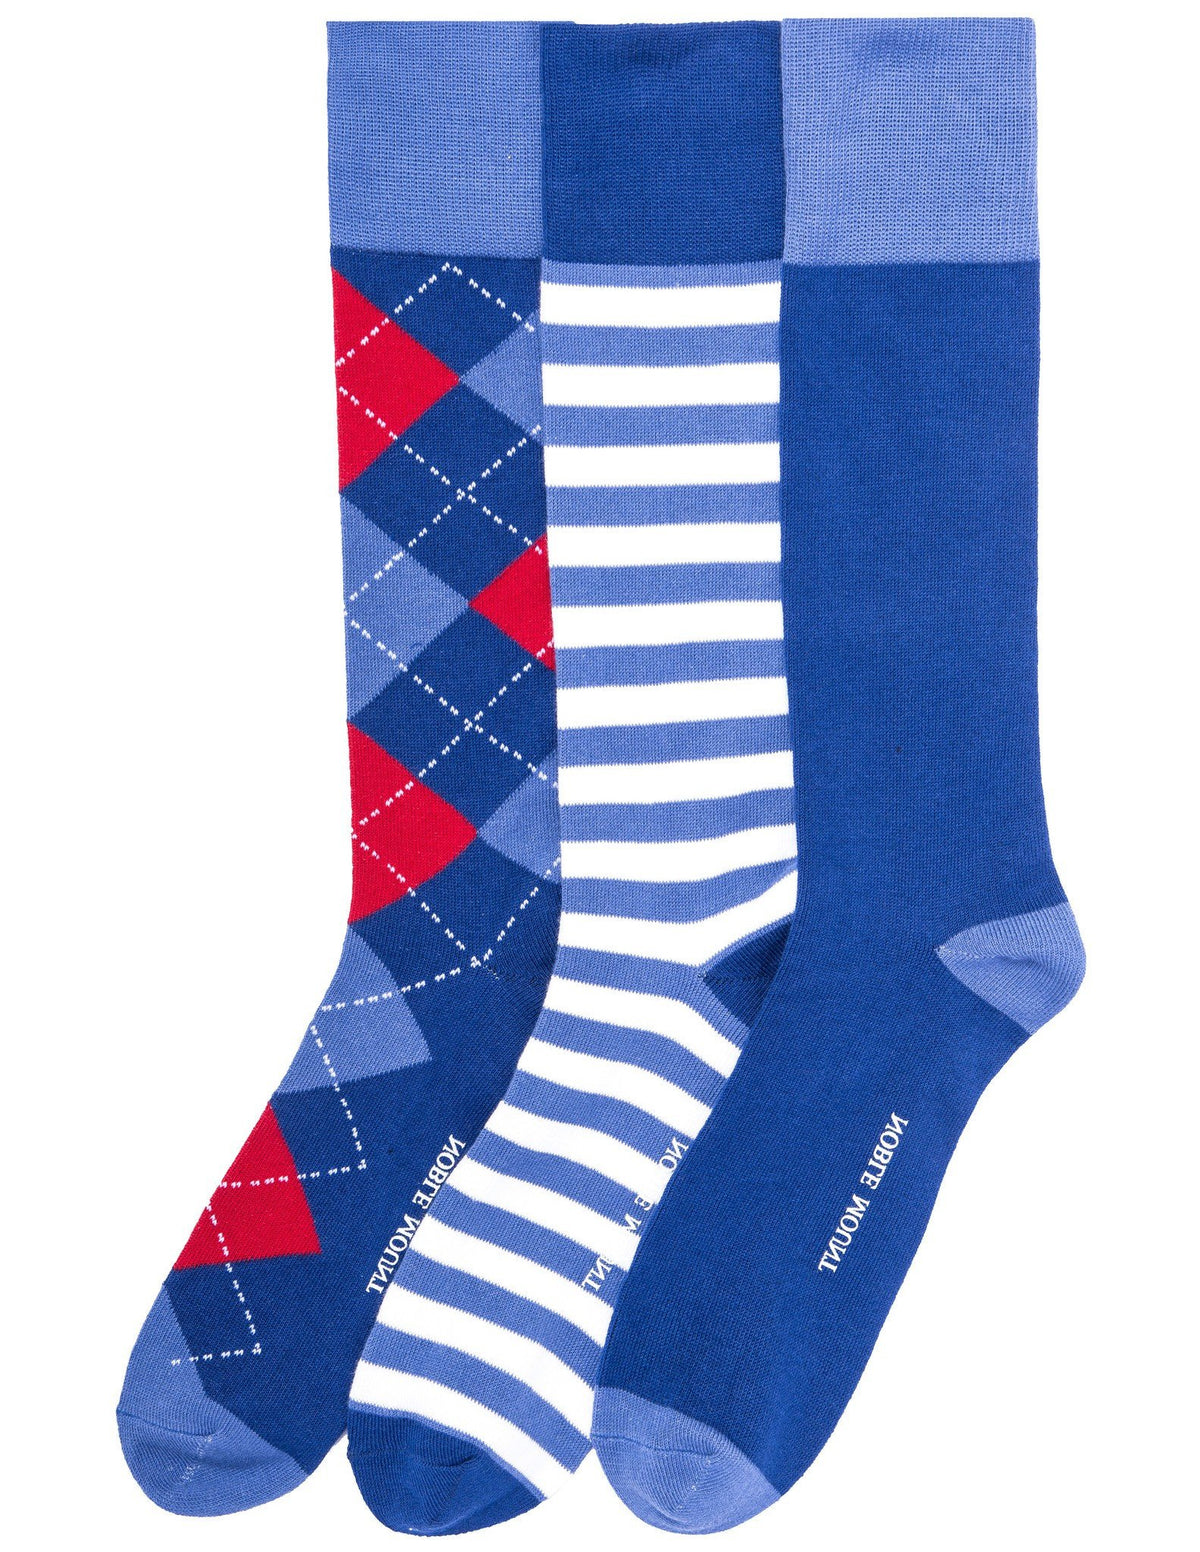 Men's Combed Cotton Dress Socks 3-Pack - Set C1